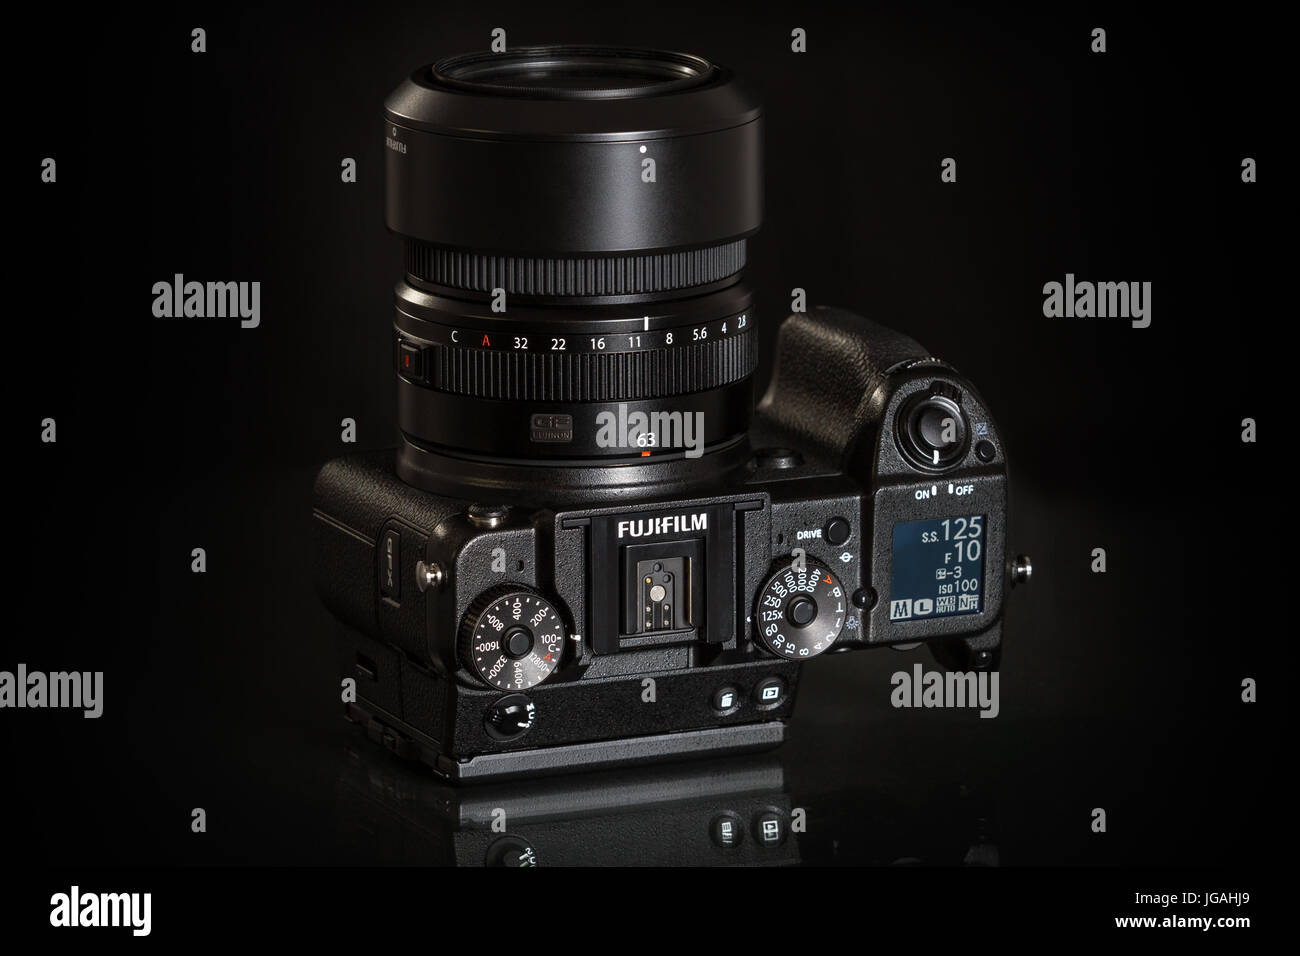 Fujifilm GFX 50er, 51 Megapixel, Sensor digitale Mittelformatkamera auf schwarzem Hintergrund reflektiert Stockfoto